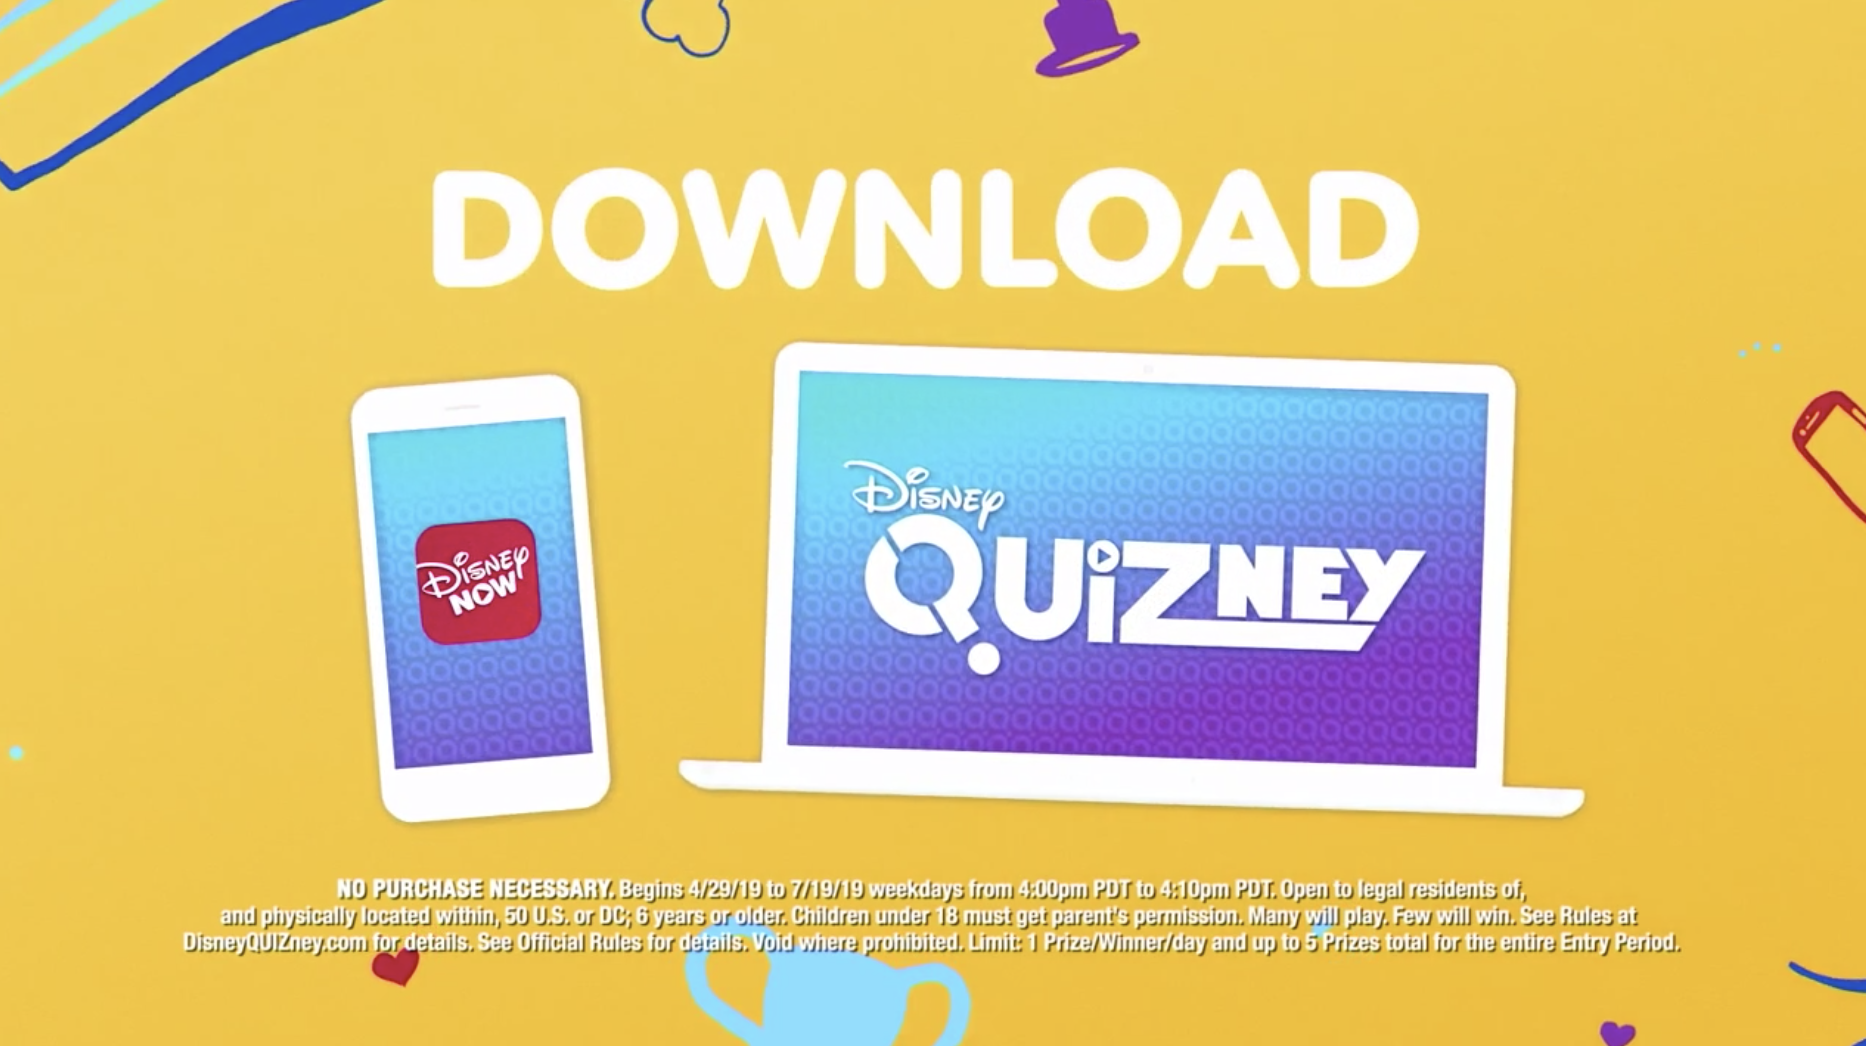 Disney NOW Quizney Download